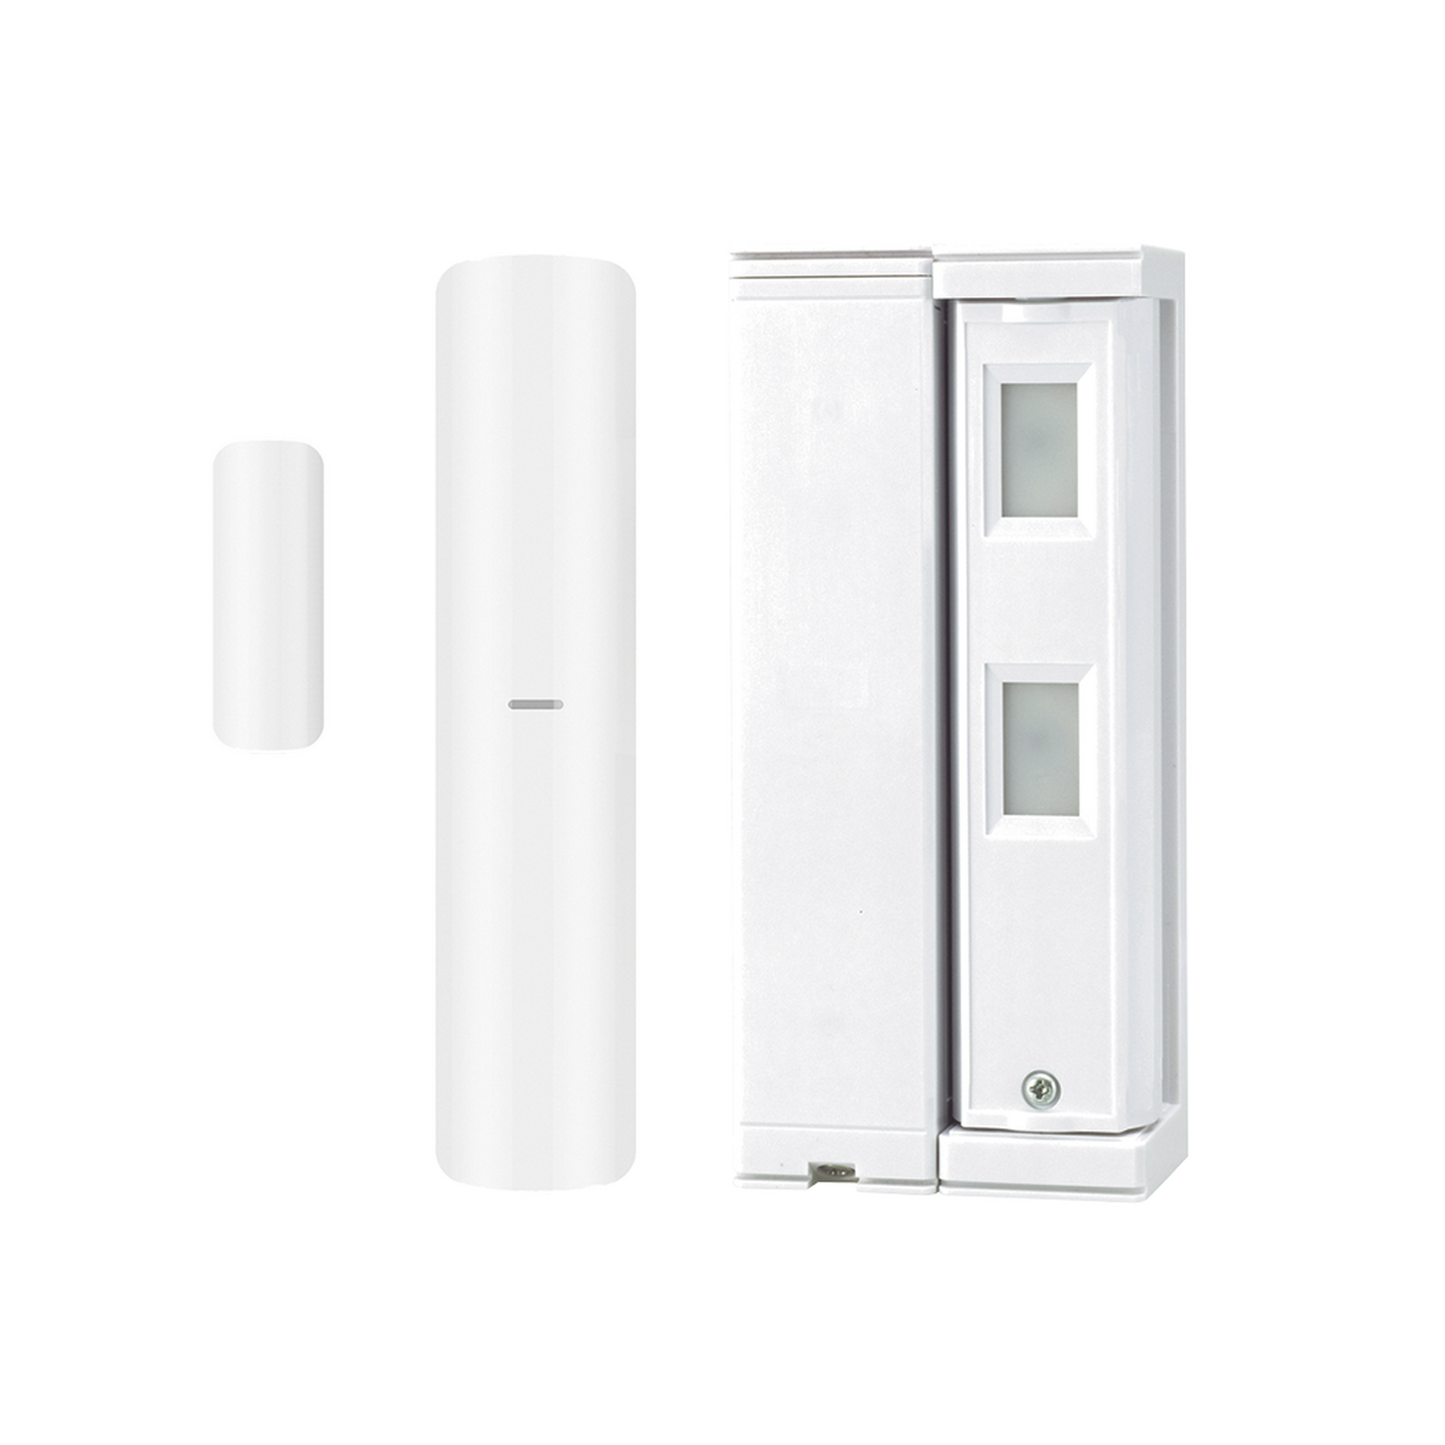 Sensor de Movimiento / Tipo Cortina / Ajuste de detección 2m o 5m / 100% Exterior / Inalámbrico / Incluye transmisor DS-PDMC-EG2-WB para paneles AXPRO/ Proteja fachadas, puertas, ventanas, balcones y mas!